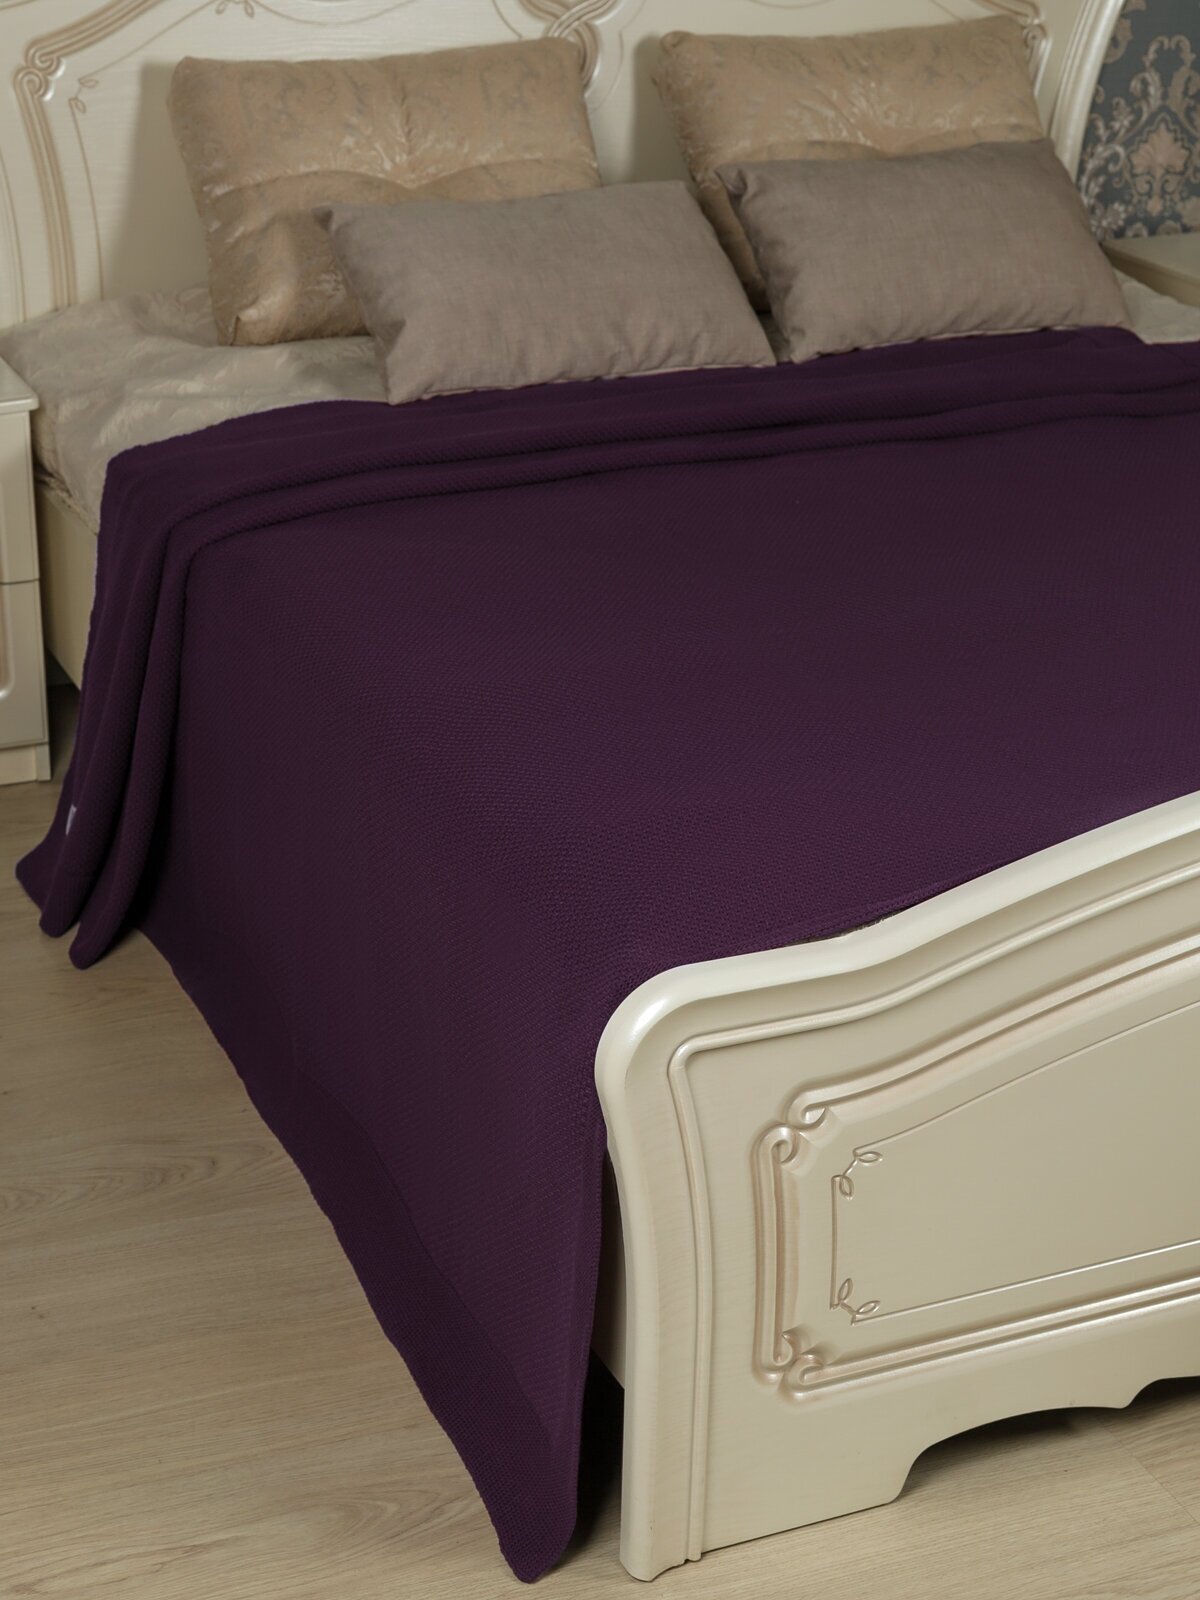 Плед вязаный, Warm Whiff, фиолетовый, 180х220, хлопок, покрывало для взрослого, дачи, спальни, кровати, однотонное одеяло, в подарок, мягкий - фотография № 4